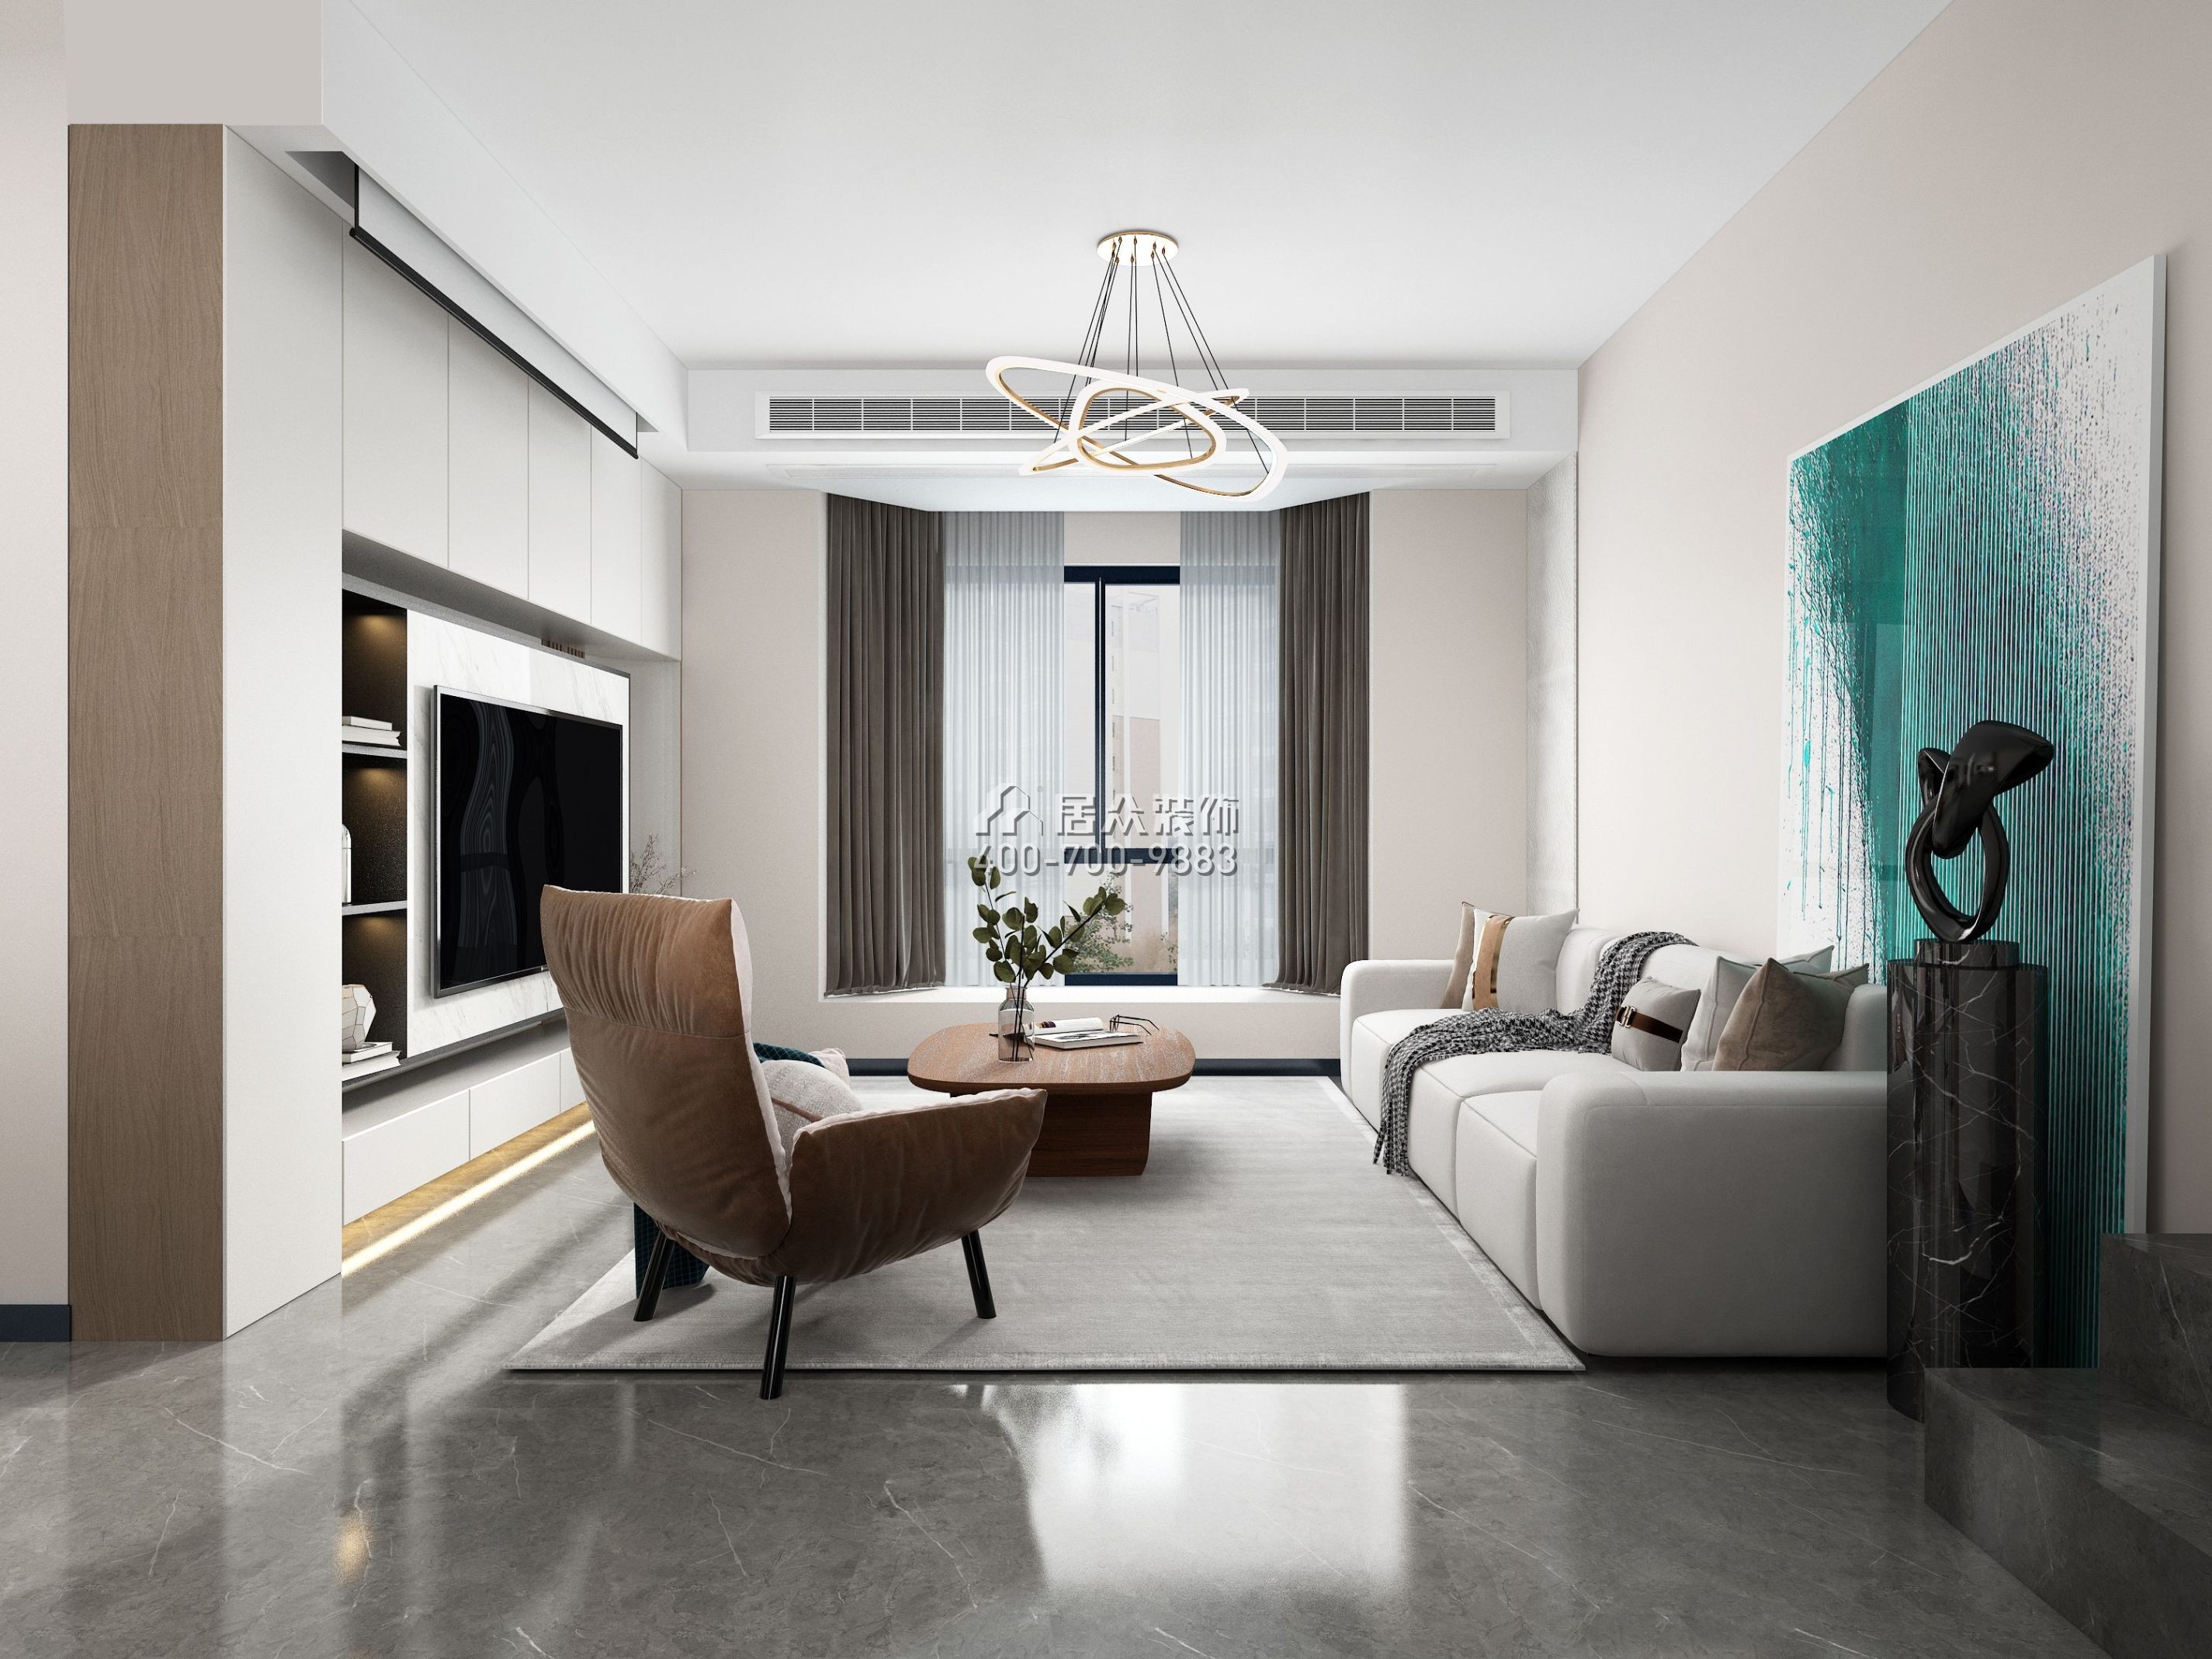 星海名城110平方米現代簡約風格平層戶型客廳裝修效果圖